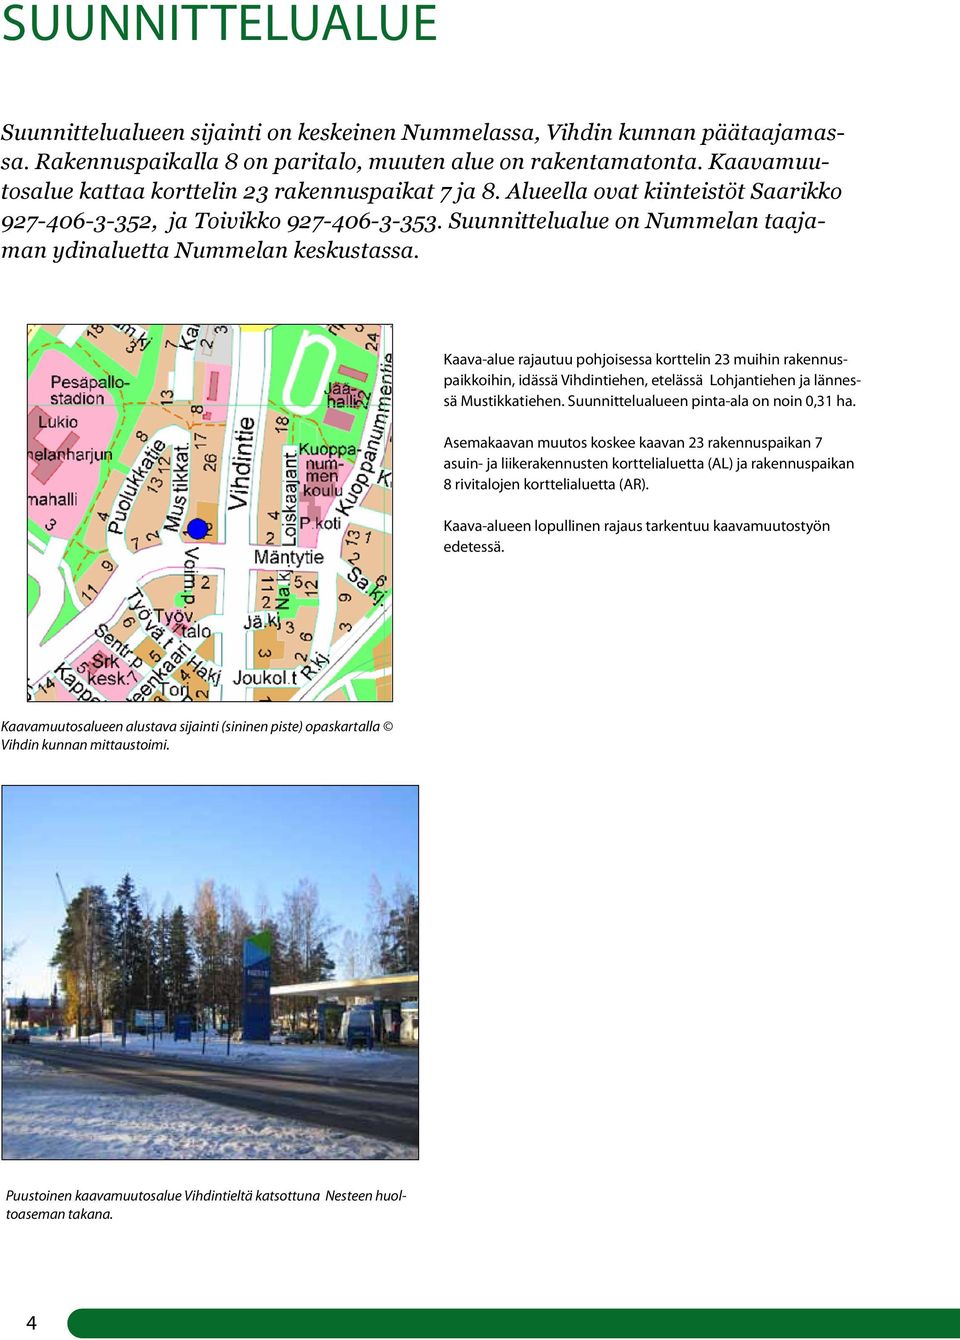 Suunnittelualue on Nummelan taajaman ydinaluetta Nummelan keskustassa.